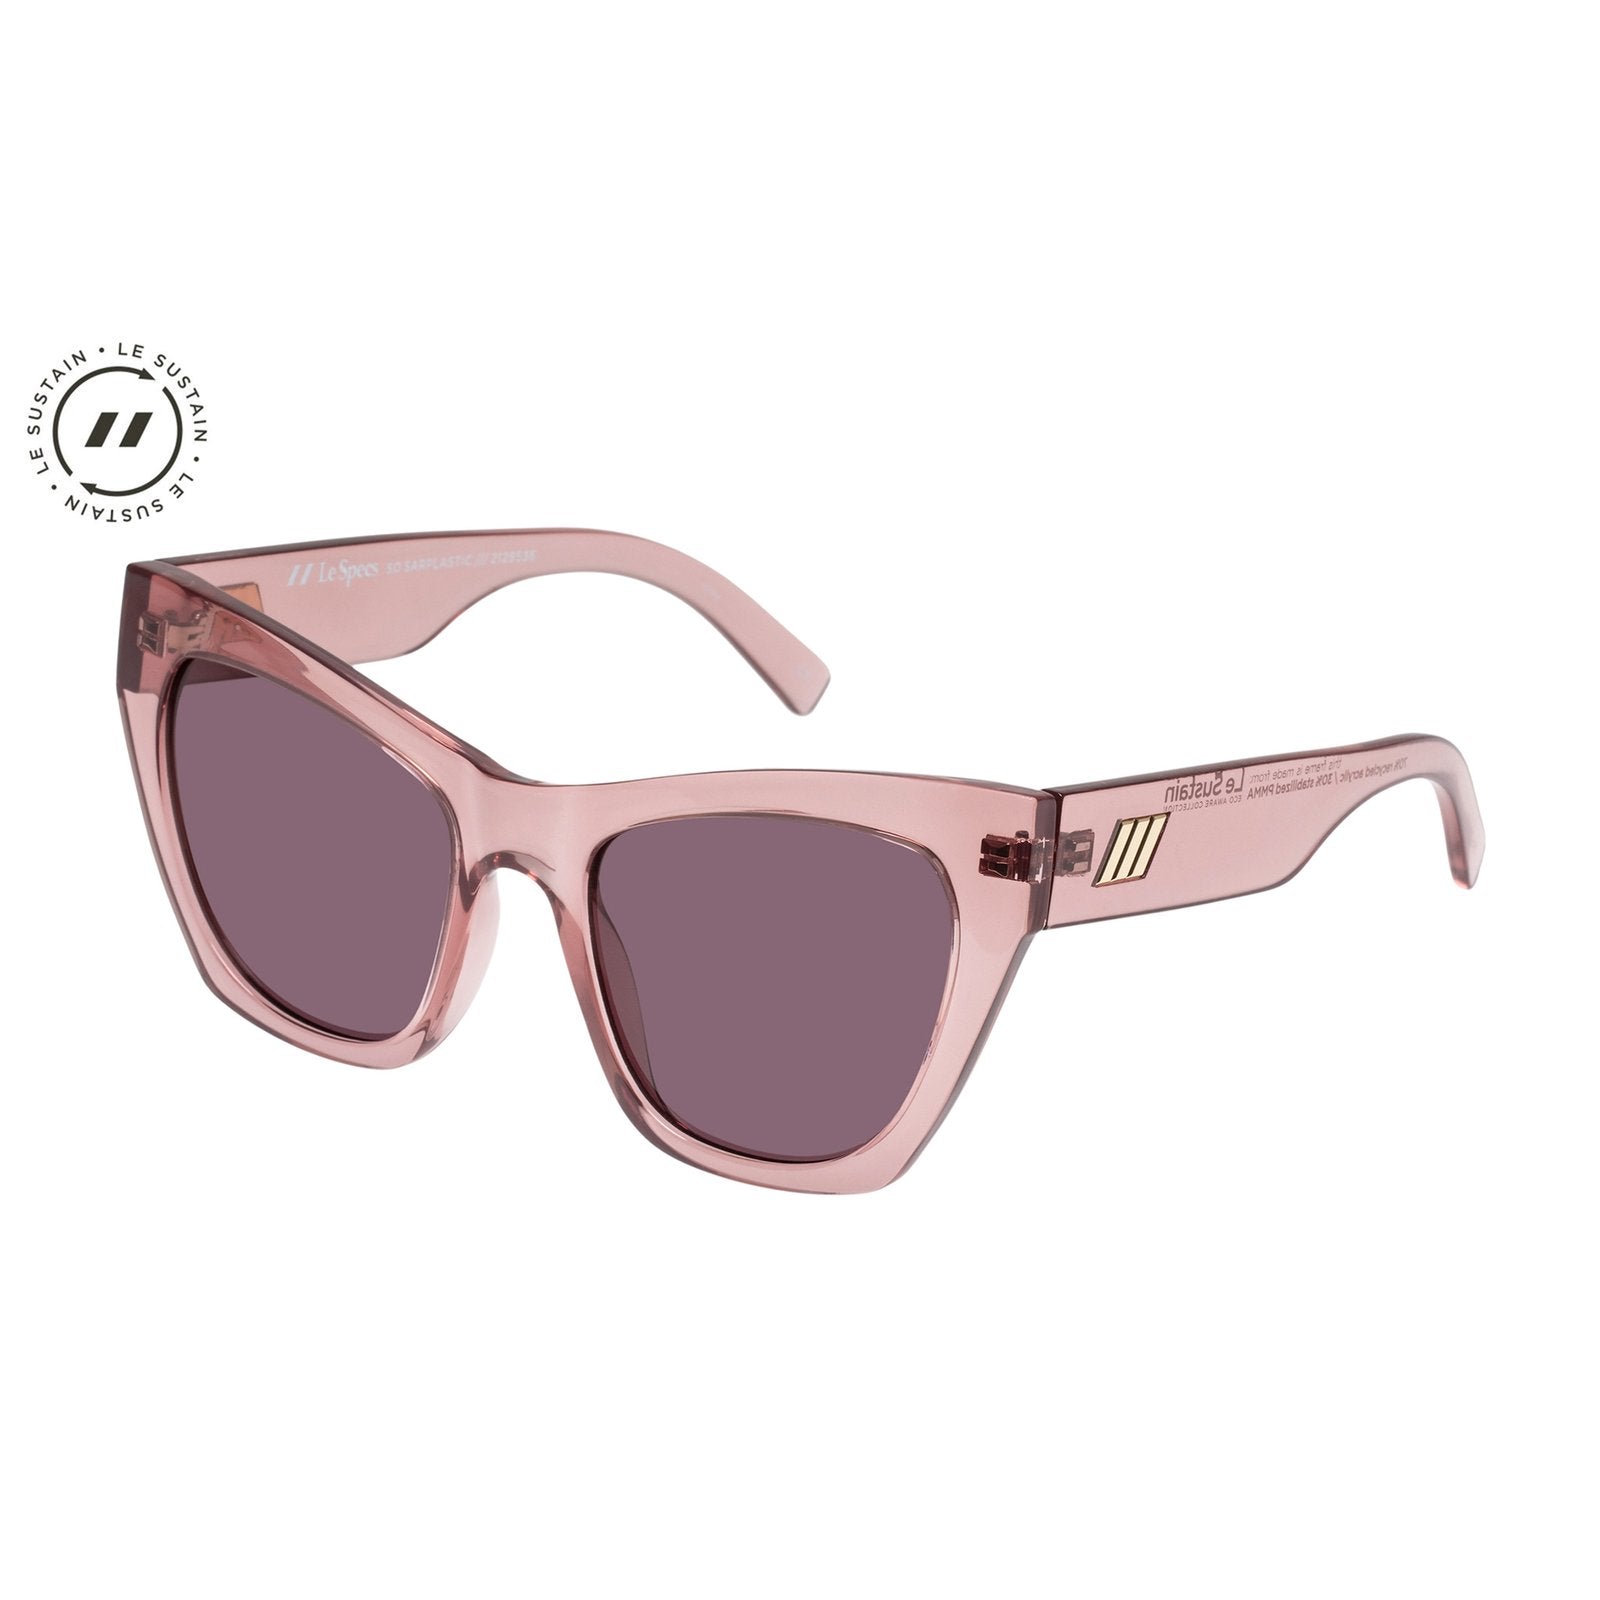 Le Specs Sunglasses - So Sarplastic - Rose Spritz